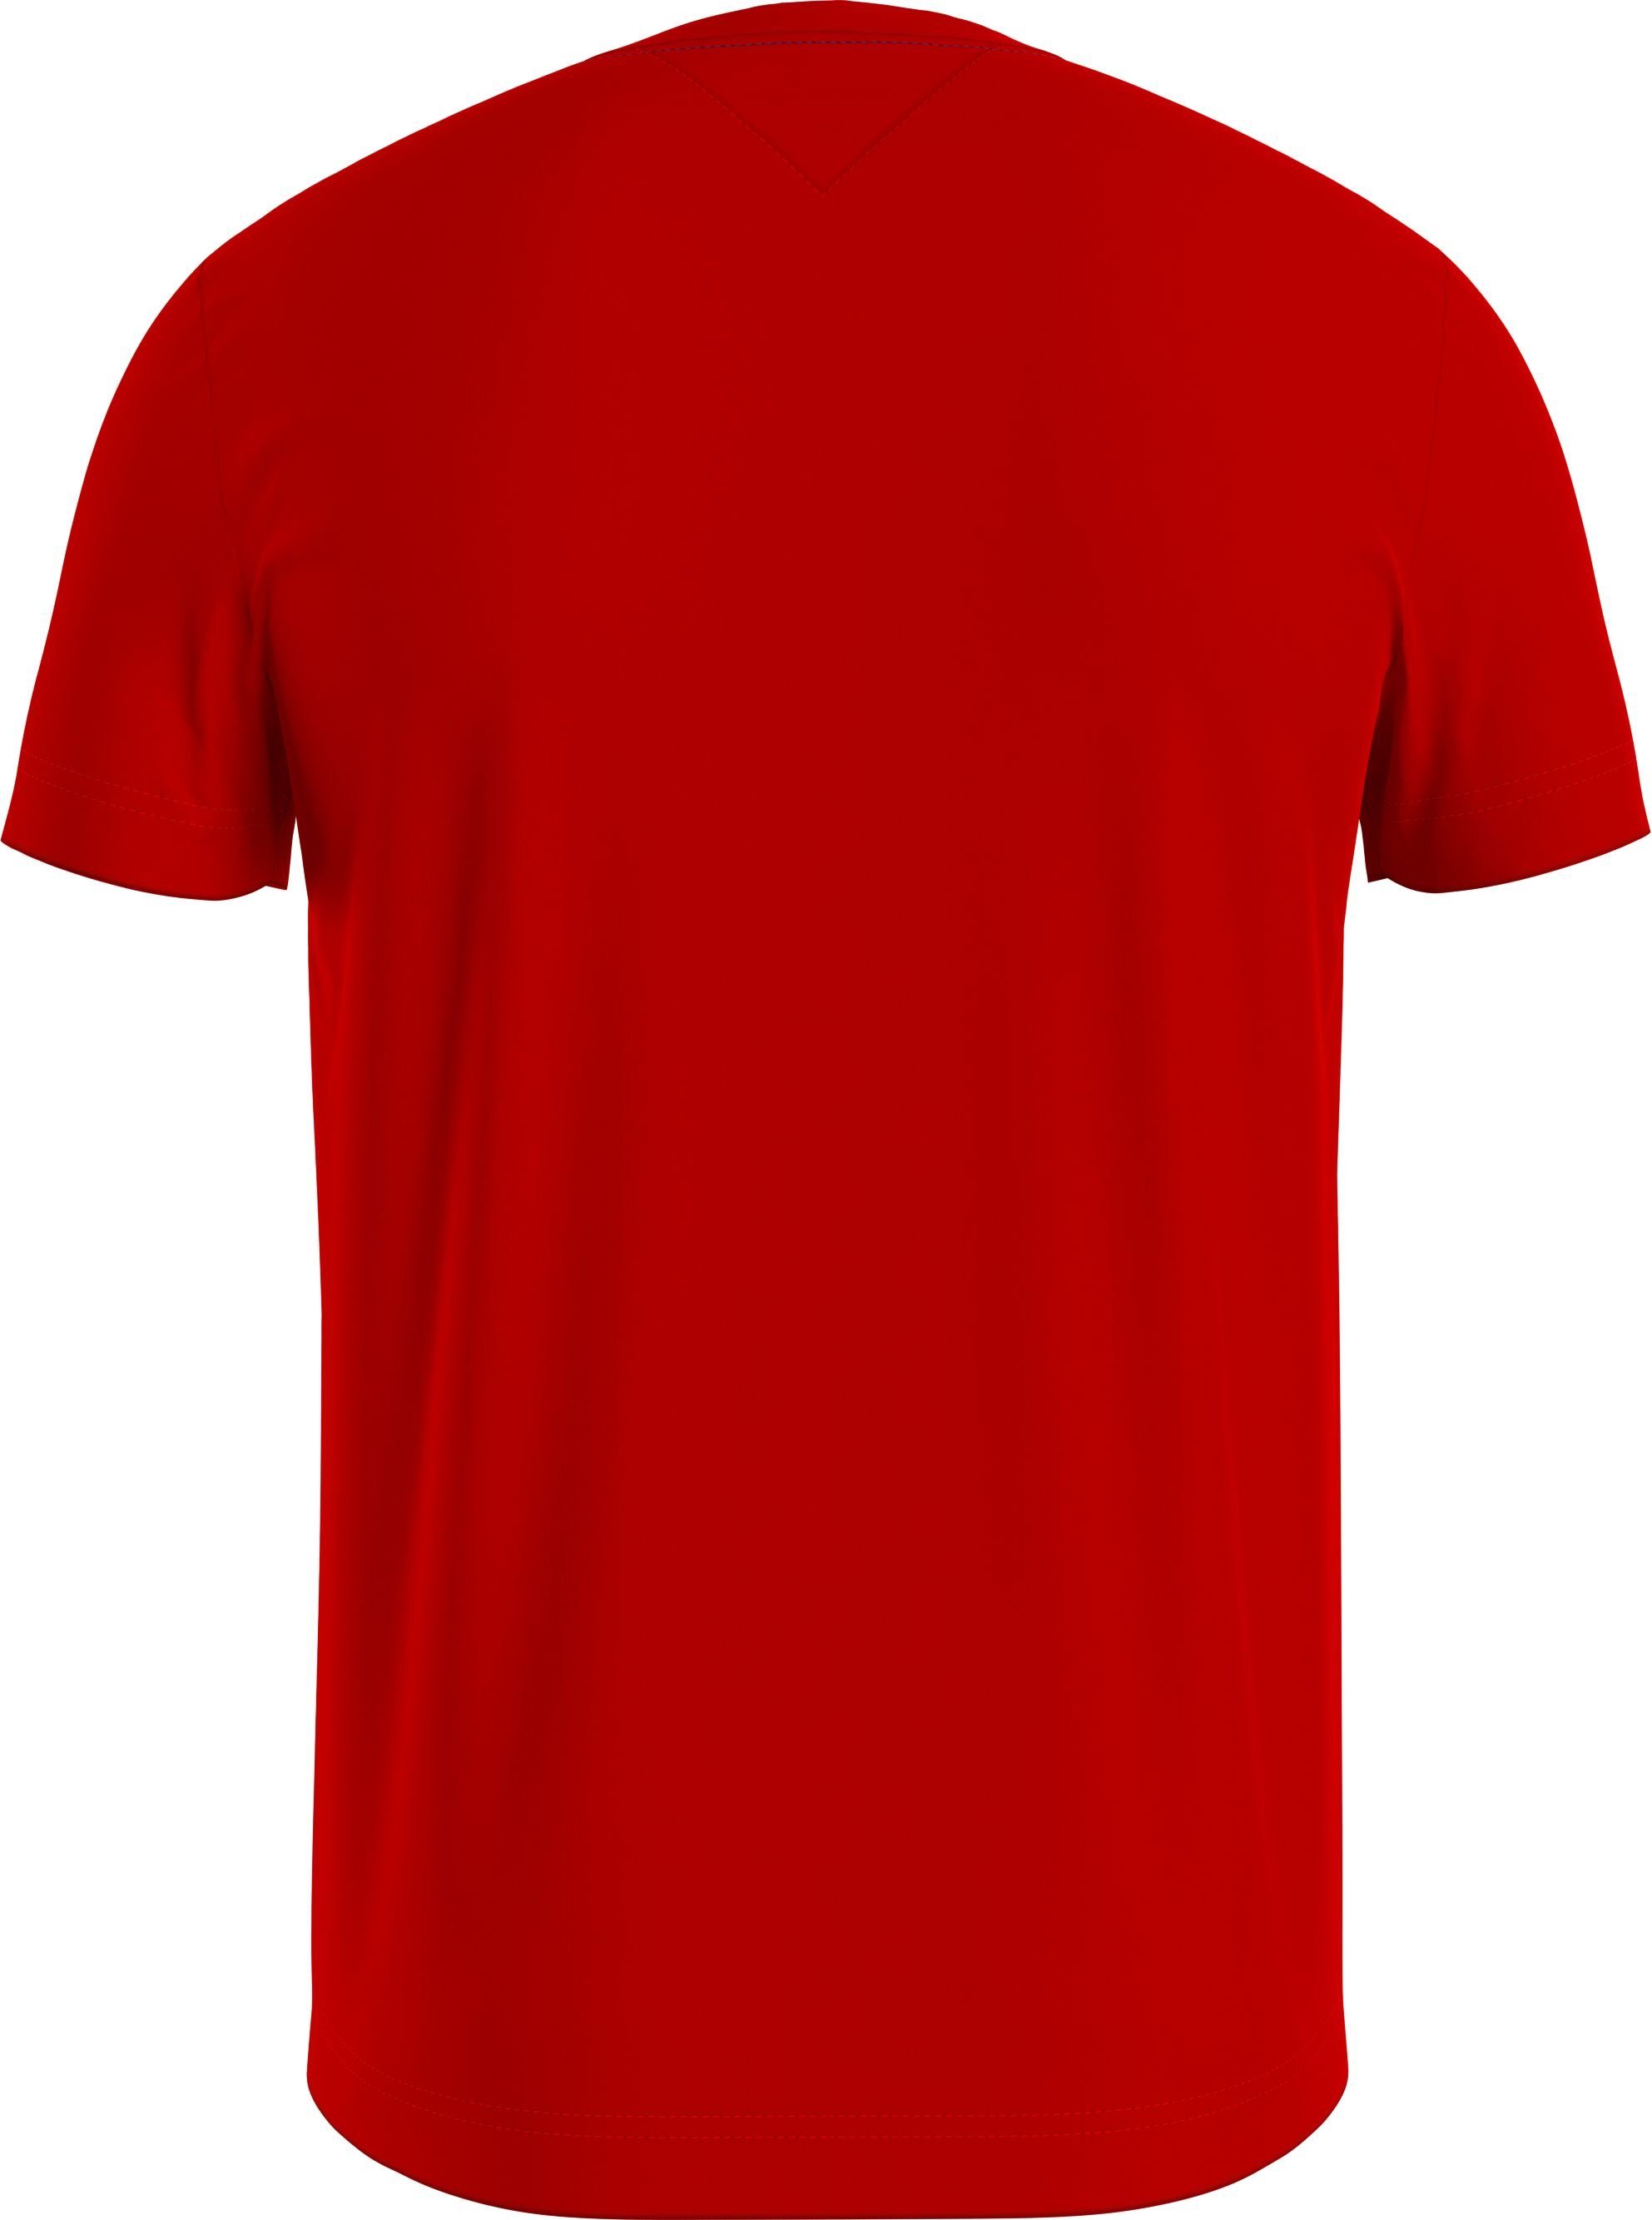 Tommy Hilfiger mit HILFIGER STRIPE CHEST auf rot Brust T-Shirt TEE der Streifenprint